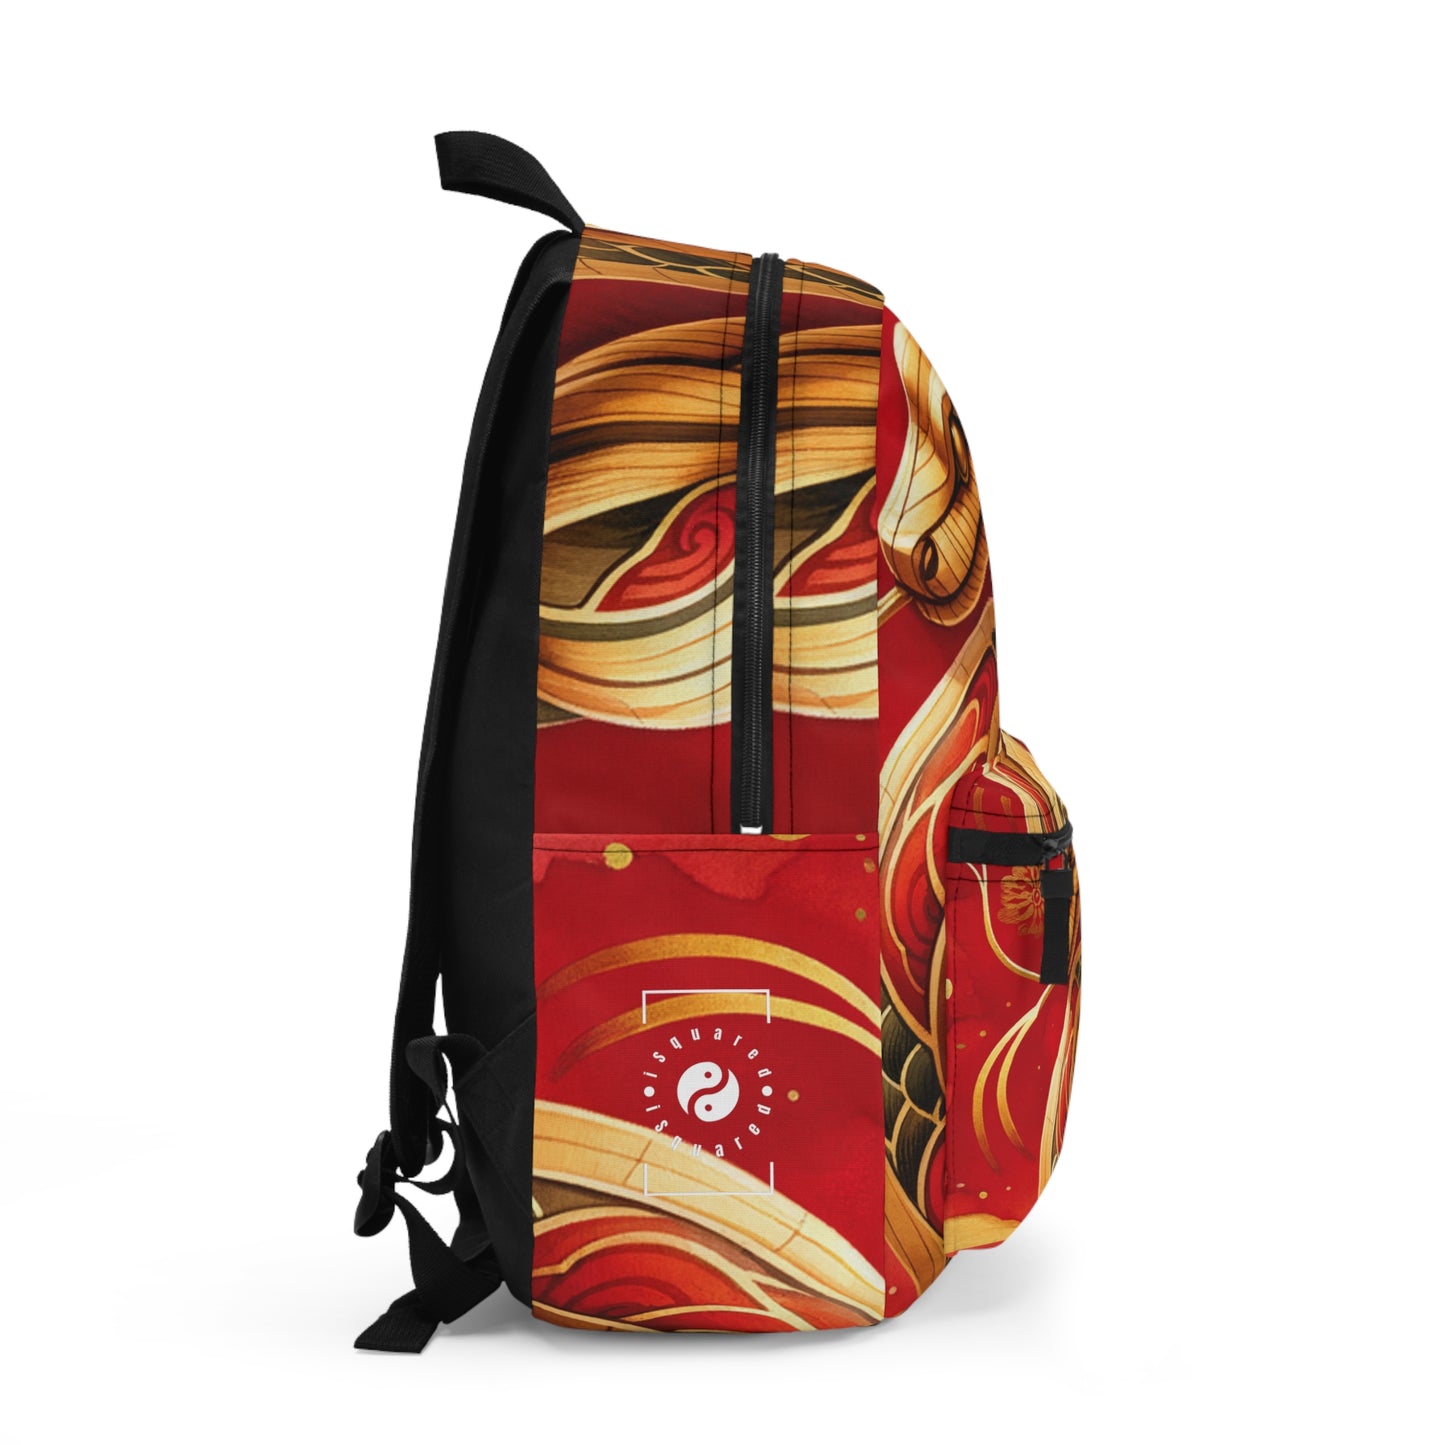 "Crimson Serenity: The Golden Snake" - Backpack